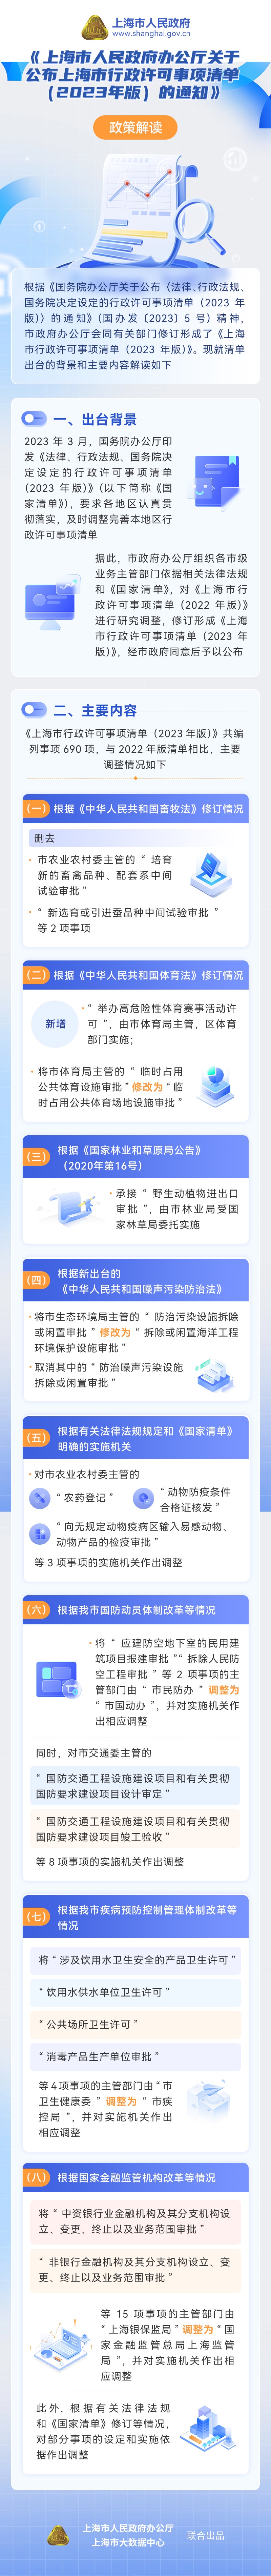 《上海市人民政府办公厅关于公布上海市行政许可事项清单（2023年版）的通知》政策图解.jpg